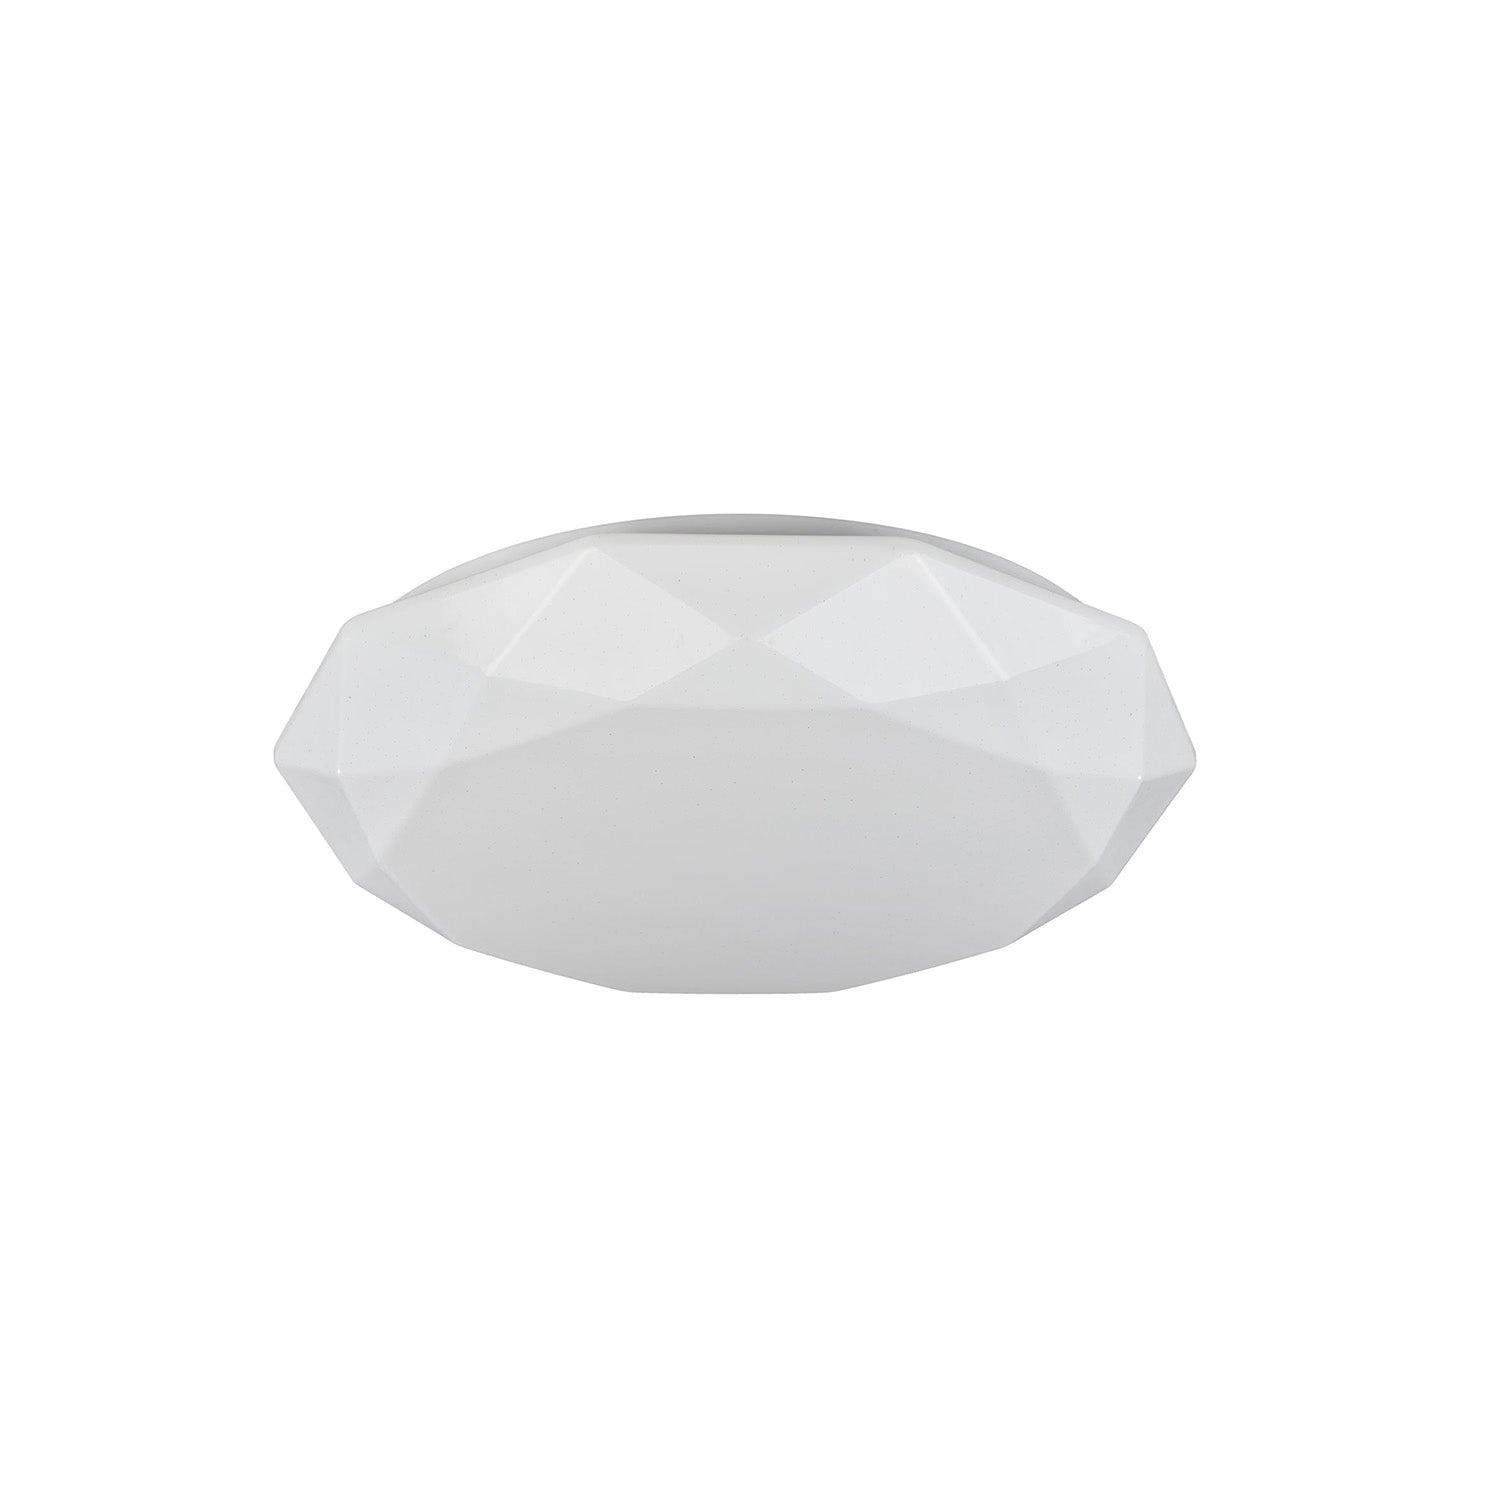 CRYSTALLIZE - Plafonnier géométrique blanc en acrylique design